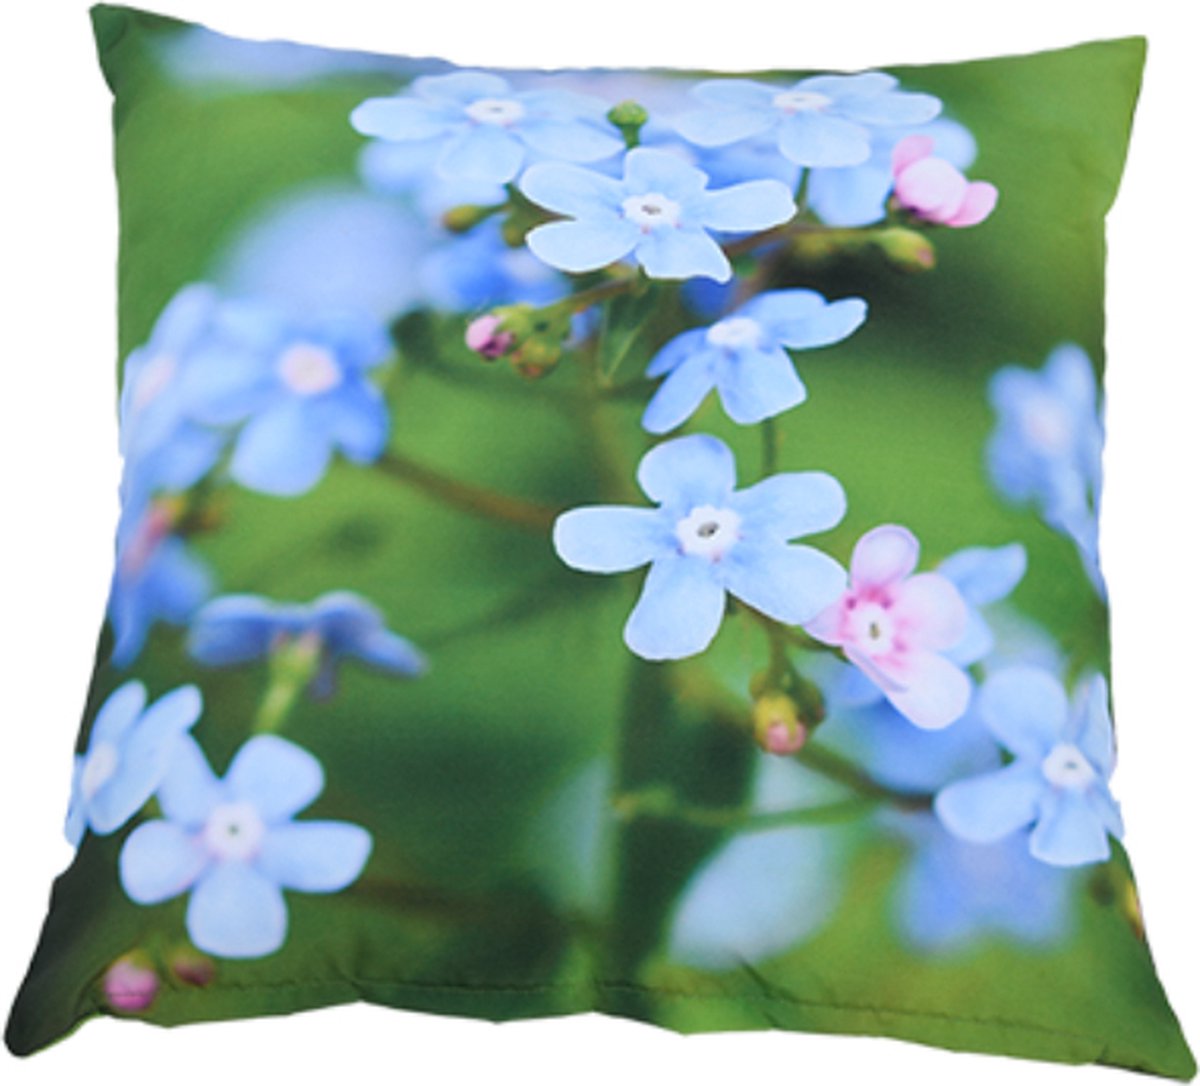 Cactula waterafstoten buitenkussen met lenteprint S 40 x 40 cm Blauwe bloemen